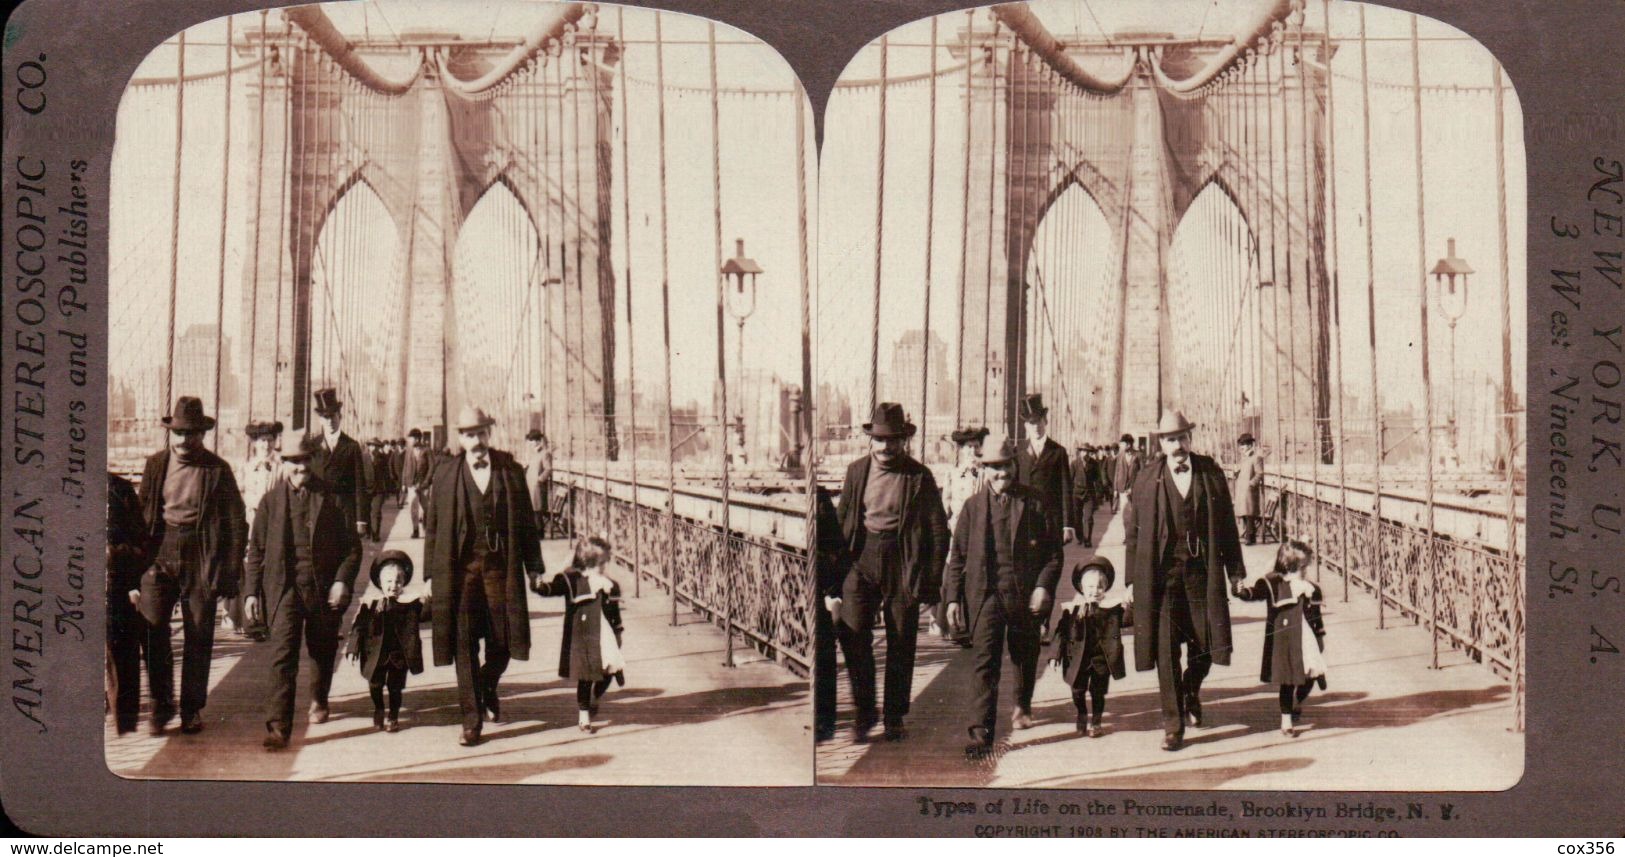 LE PONT SUSPENDU De BROOKLYN Sur La RIVIÈRE De L'EST NEW YORK  ETATS UNIS 1880/1900 ( PHOTO STEREOSCOPIC ) - Stereoscopic